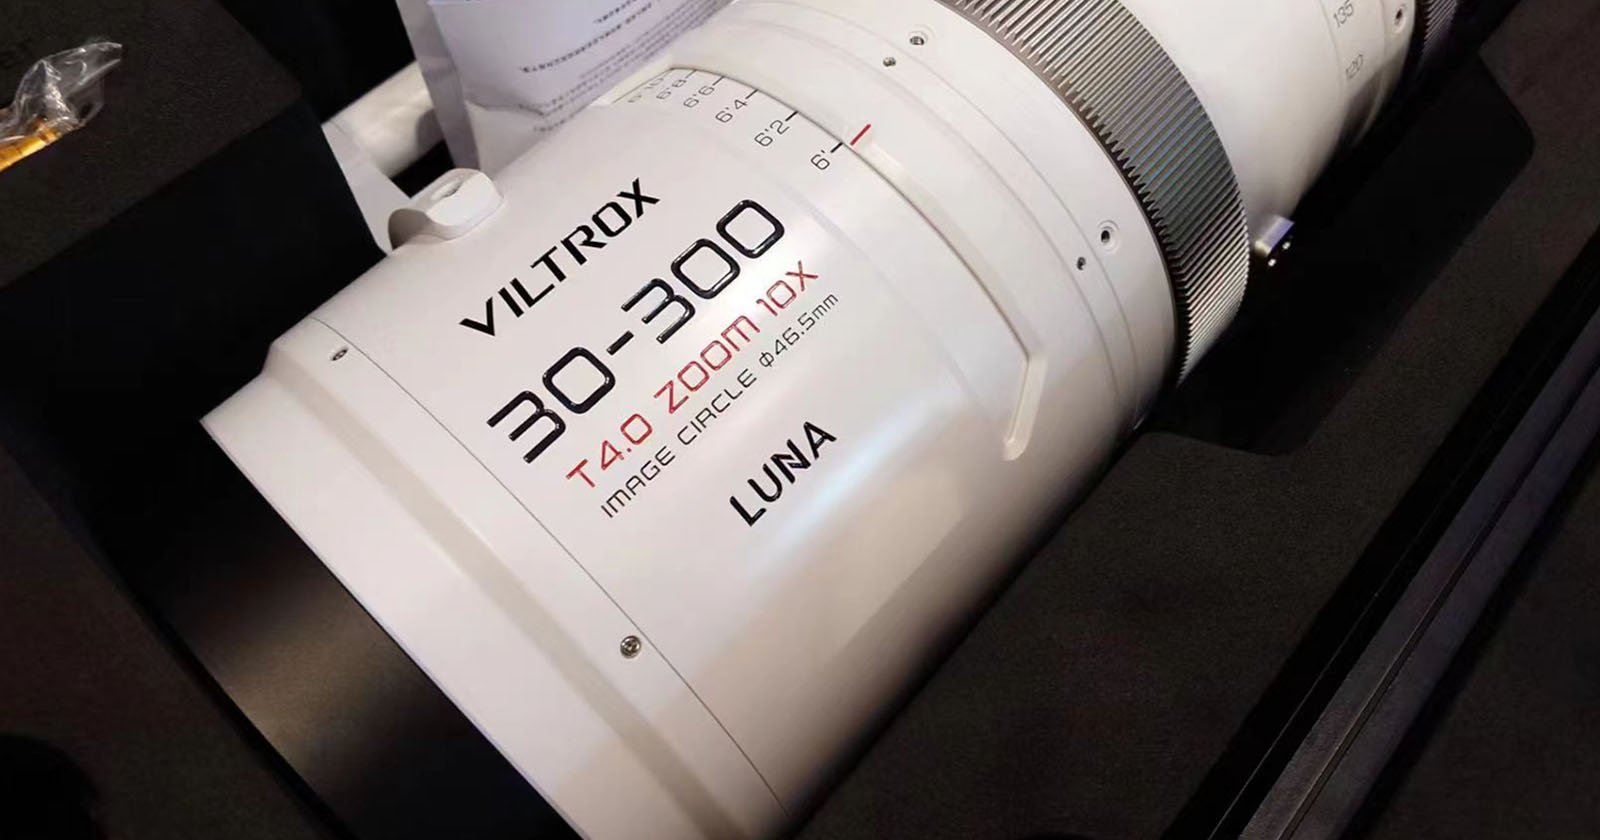  viltrox teases wild 30-300mm full-frame cine lens 